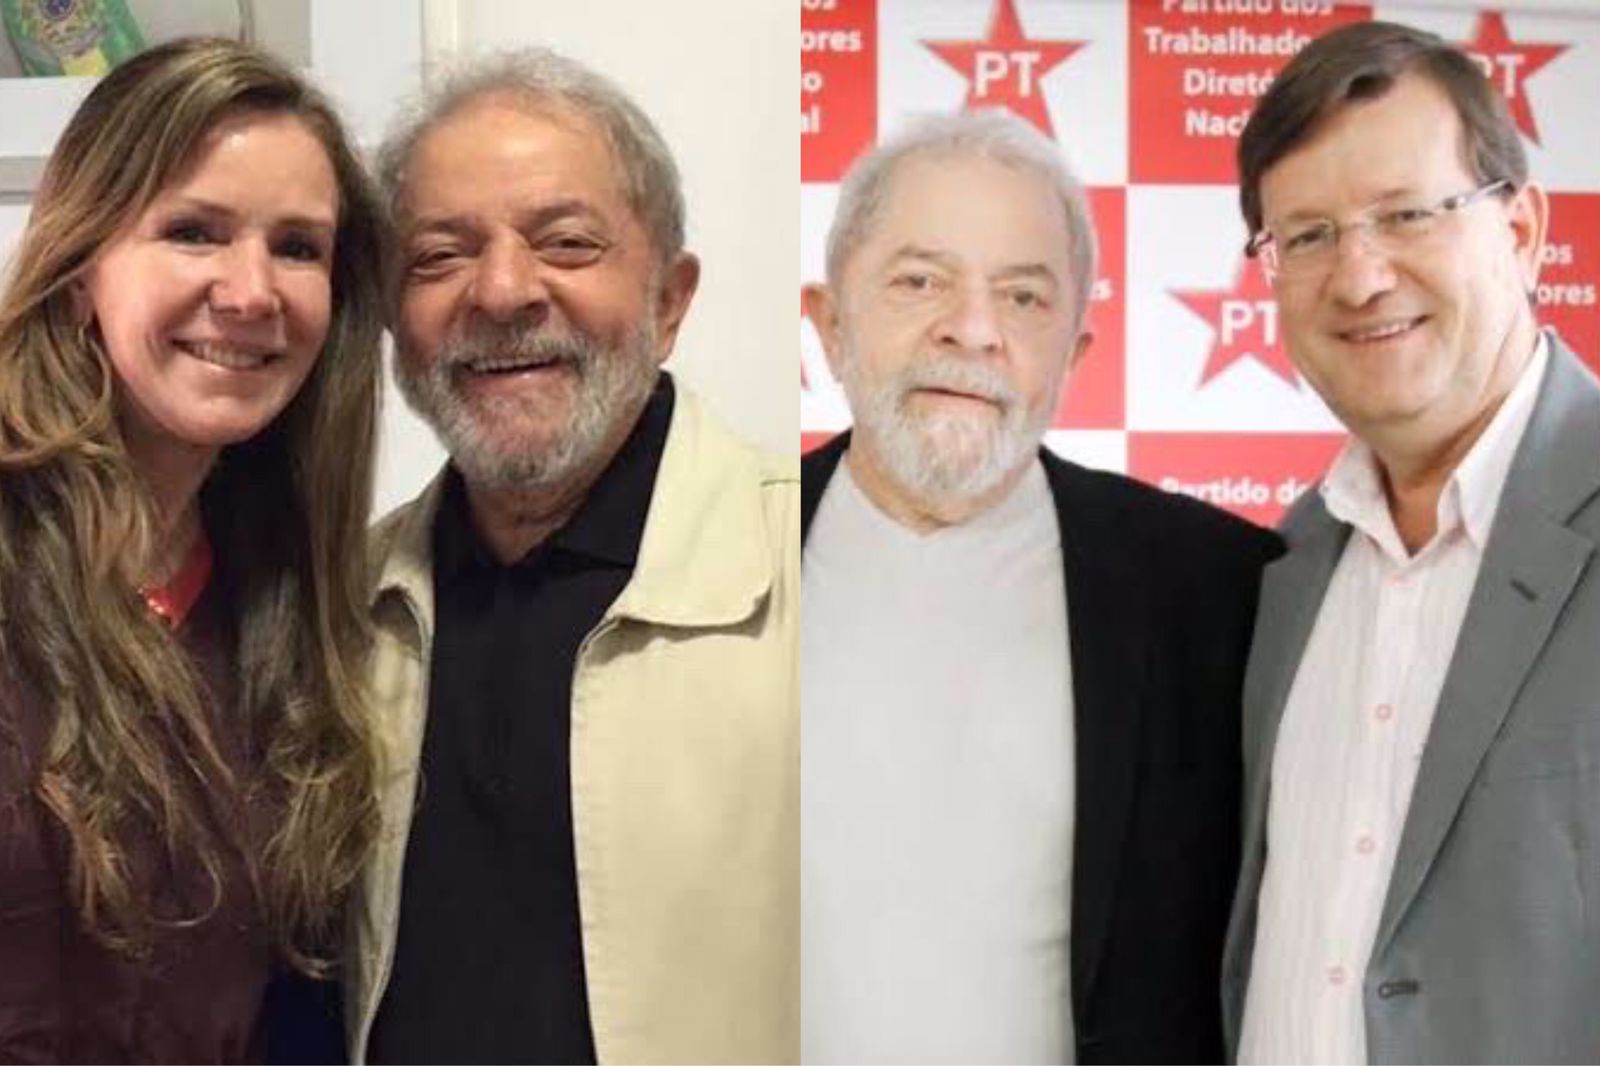 Vanessa Grazziotin e Zé Ricardo homenageiam Lula nas redes em seu aniversário de 76 anos